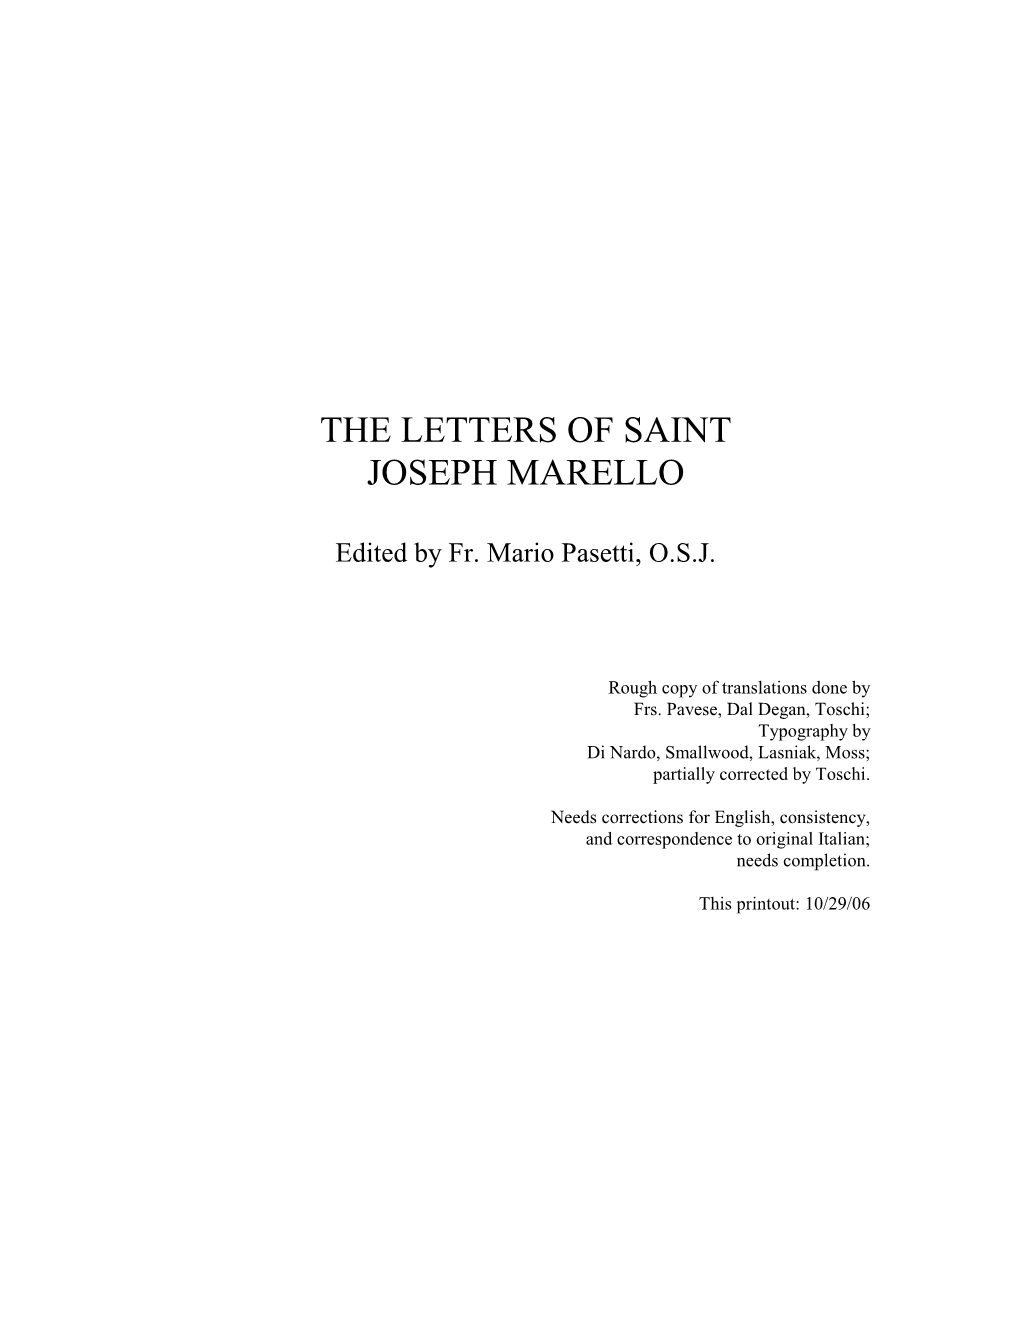 The Letters of Saint Joseph Marello